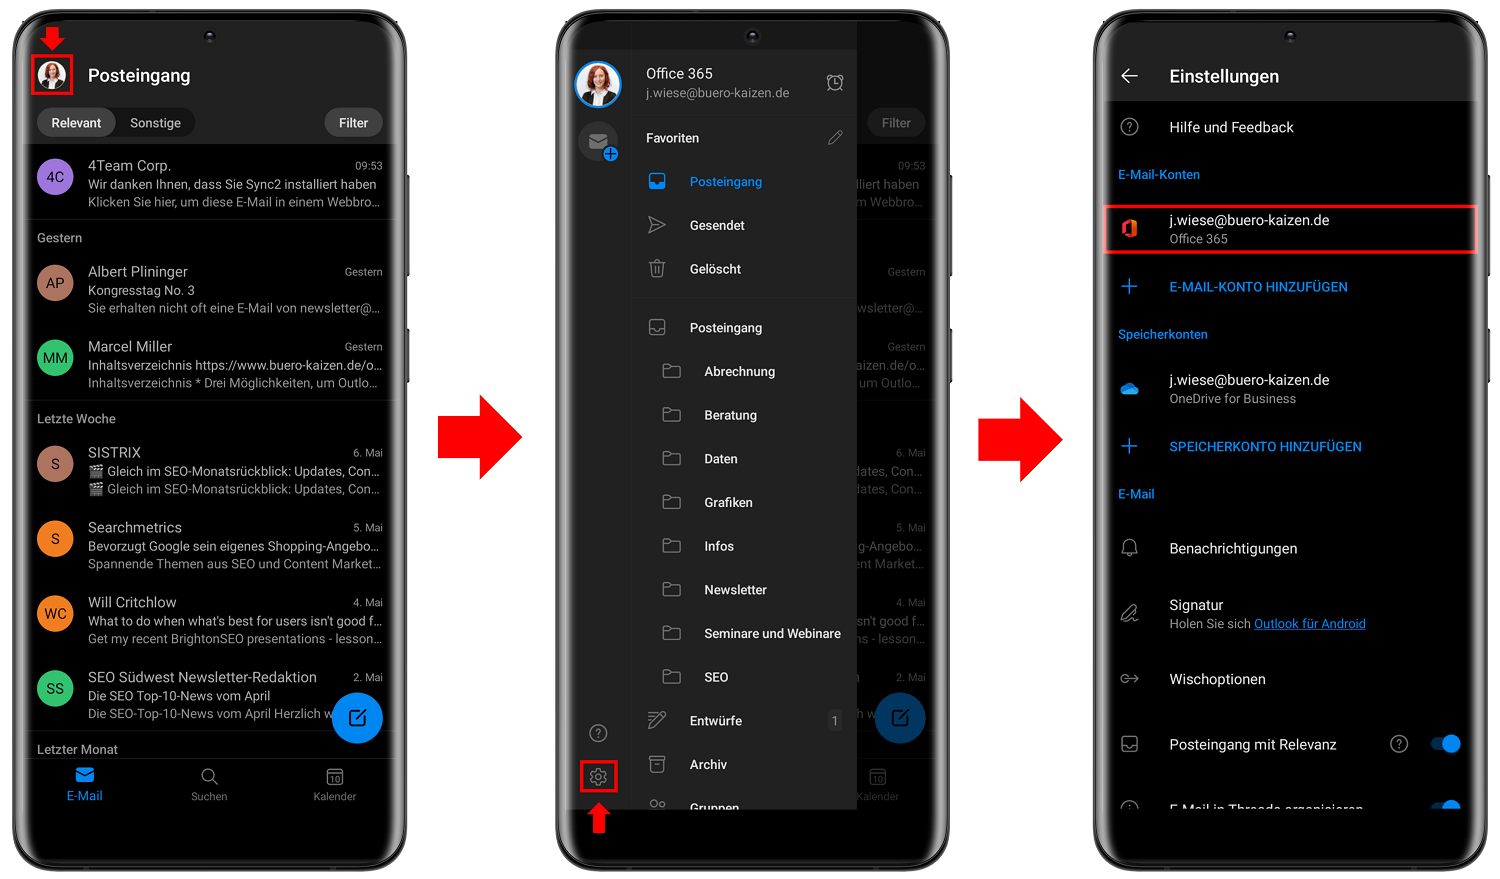 Sie können Ihre Outlook Kontakte von Android in der App synchronisieren.